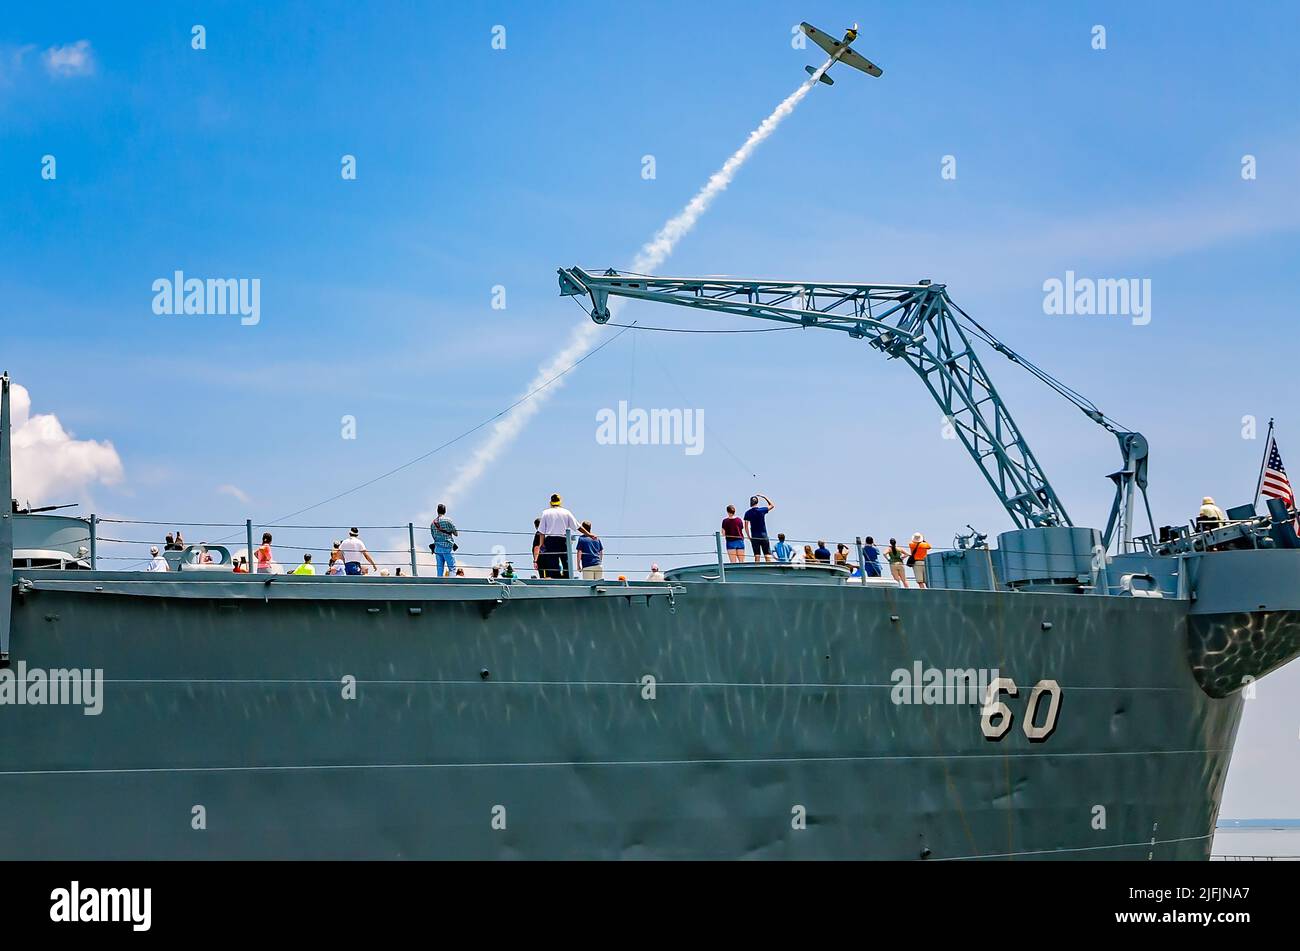 La gente esplora il ponte della USS Alabama mentre un aereo da guerra d'epoca vola oltre, 12 agosto 2017, al Battleship Memorial Park a Mobile, Alabama. Foto Stock